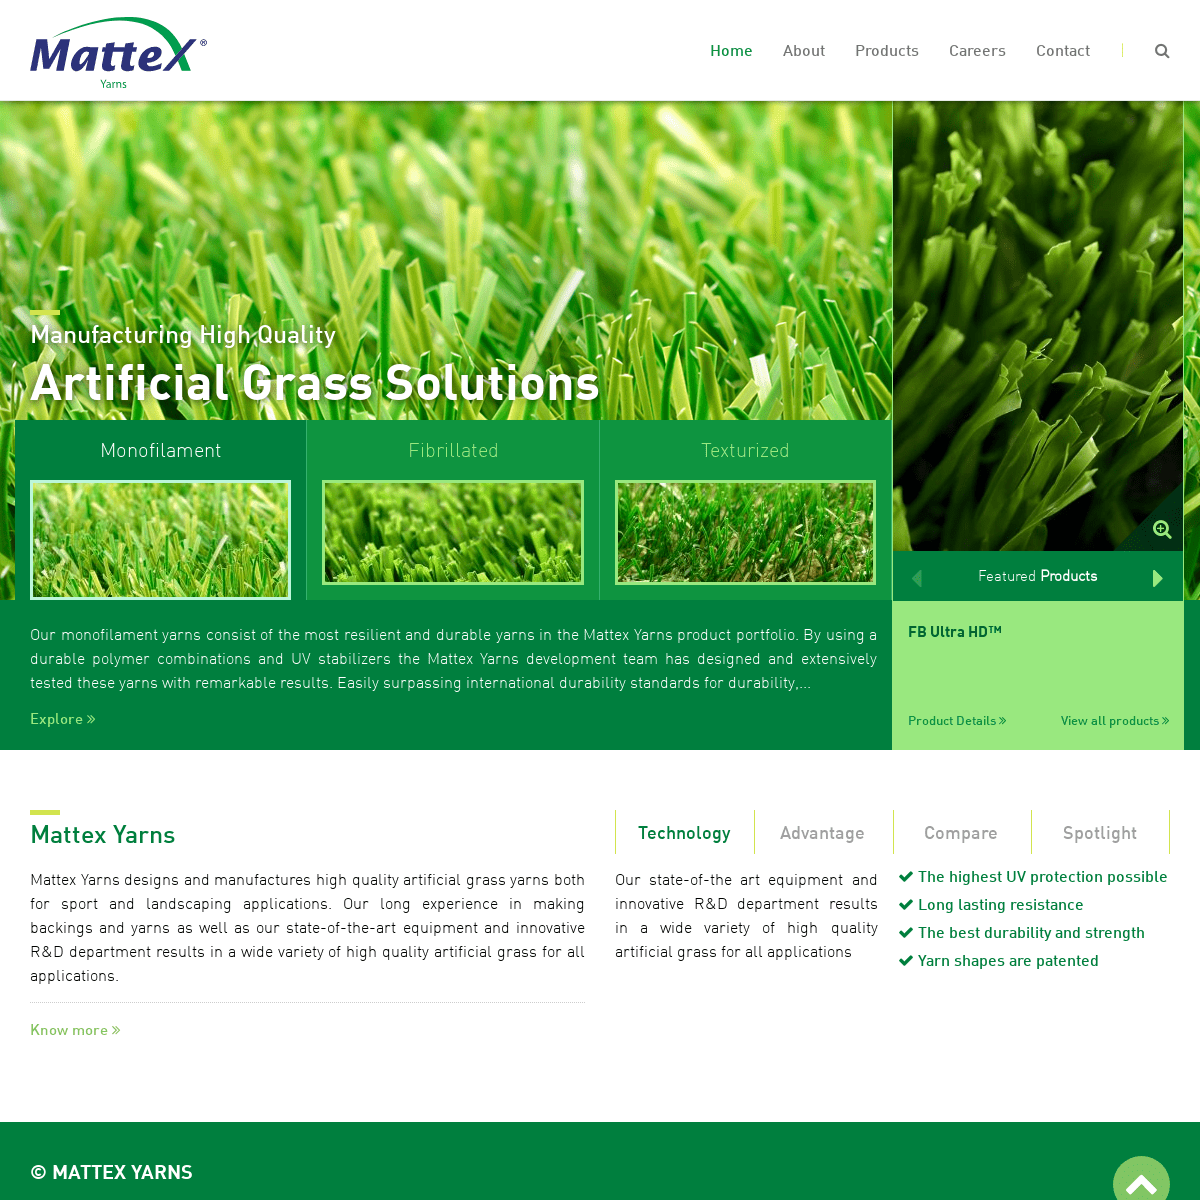 A complete backup of mattexyarns.com